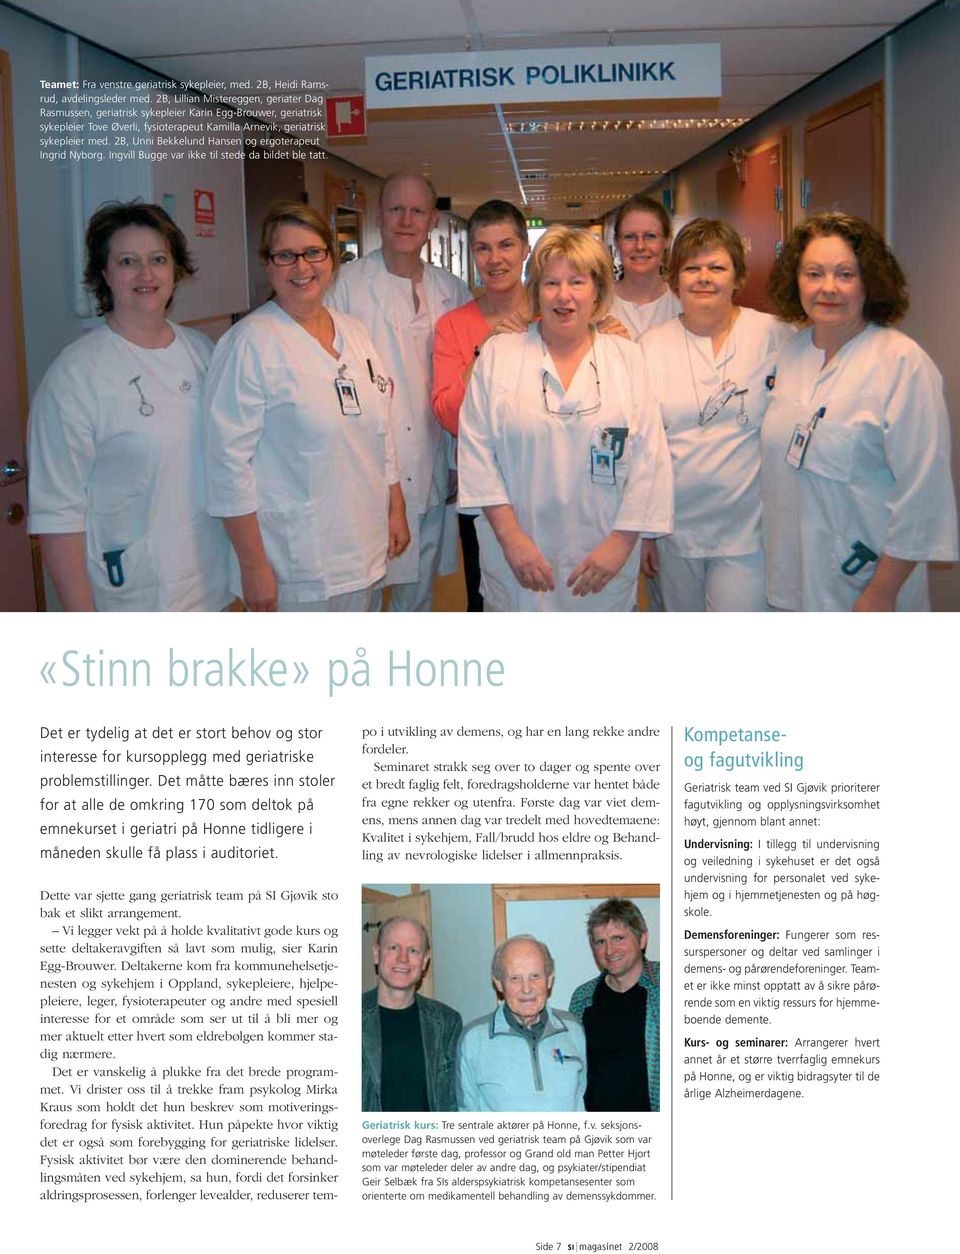 2B, Unni Bekkelund Hansen og ergoterapeut Ingrid Nyborg. Ingvill Bugge var ikke til stede da bildet ble tatt.